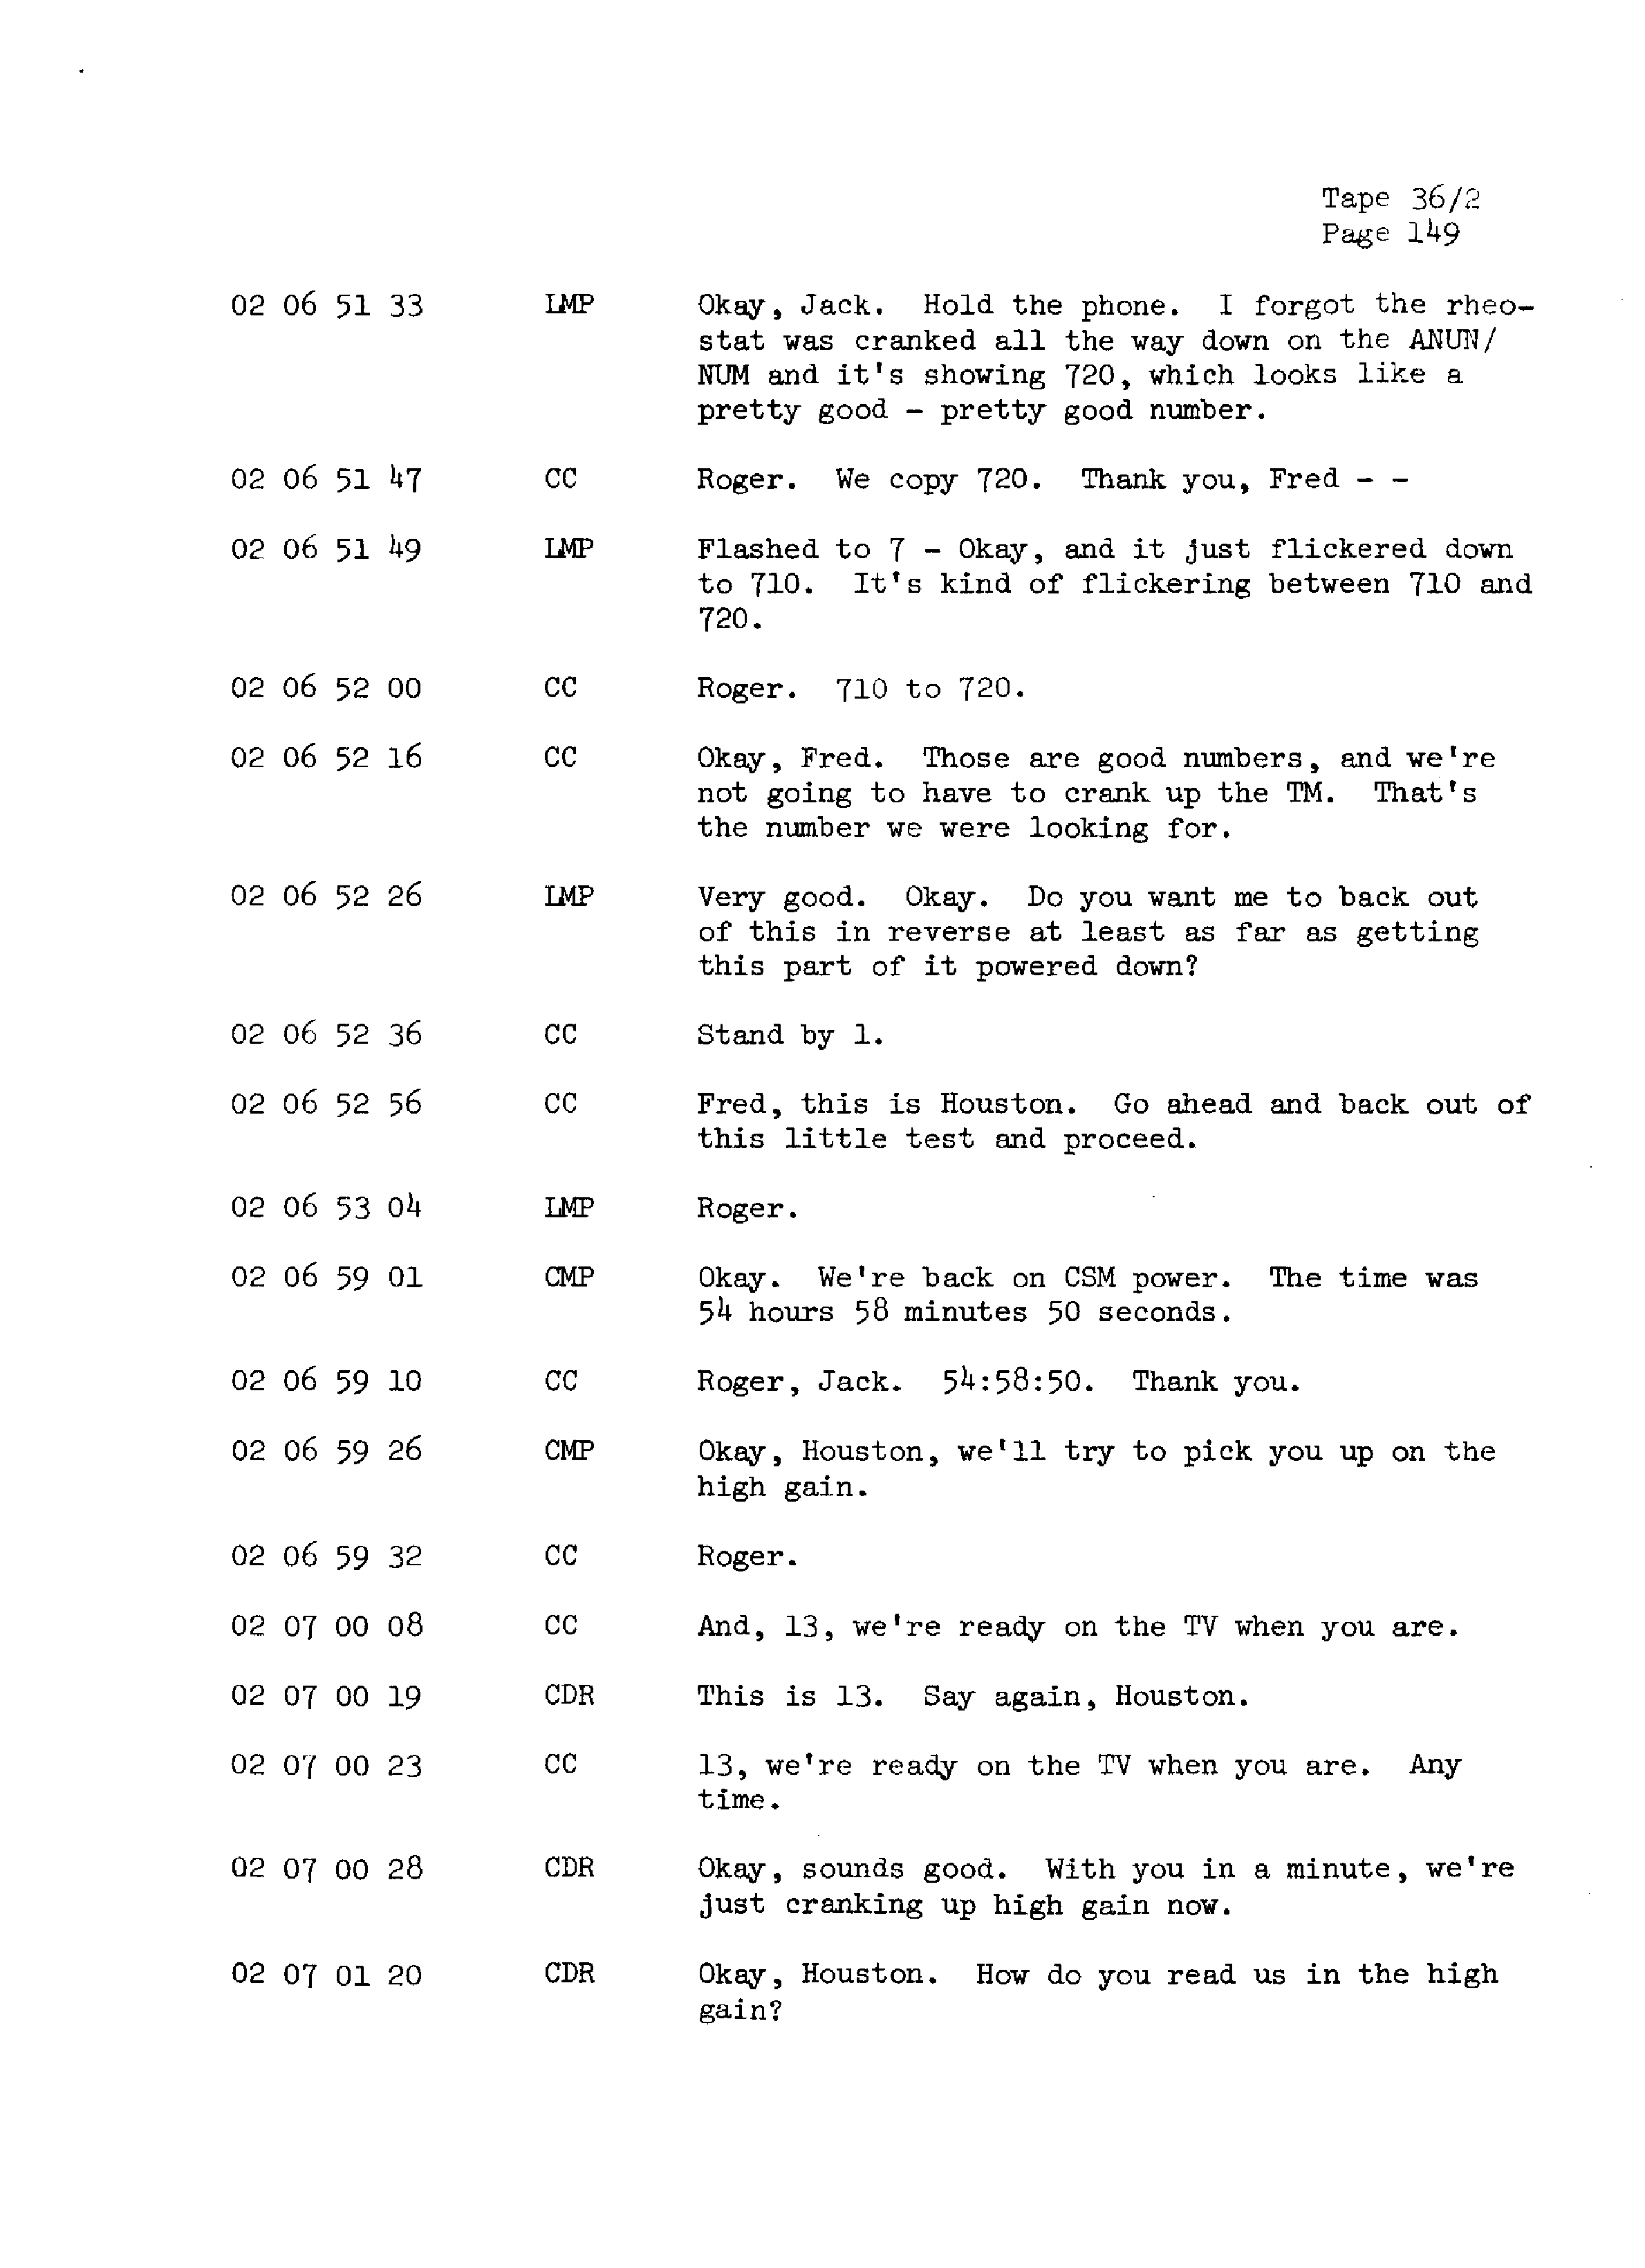 Page 156 of Apollo 13’s original transcript